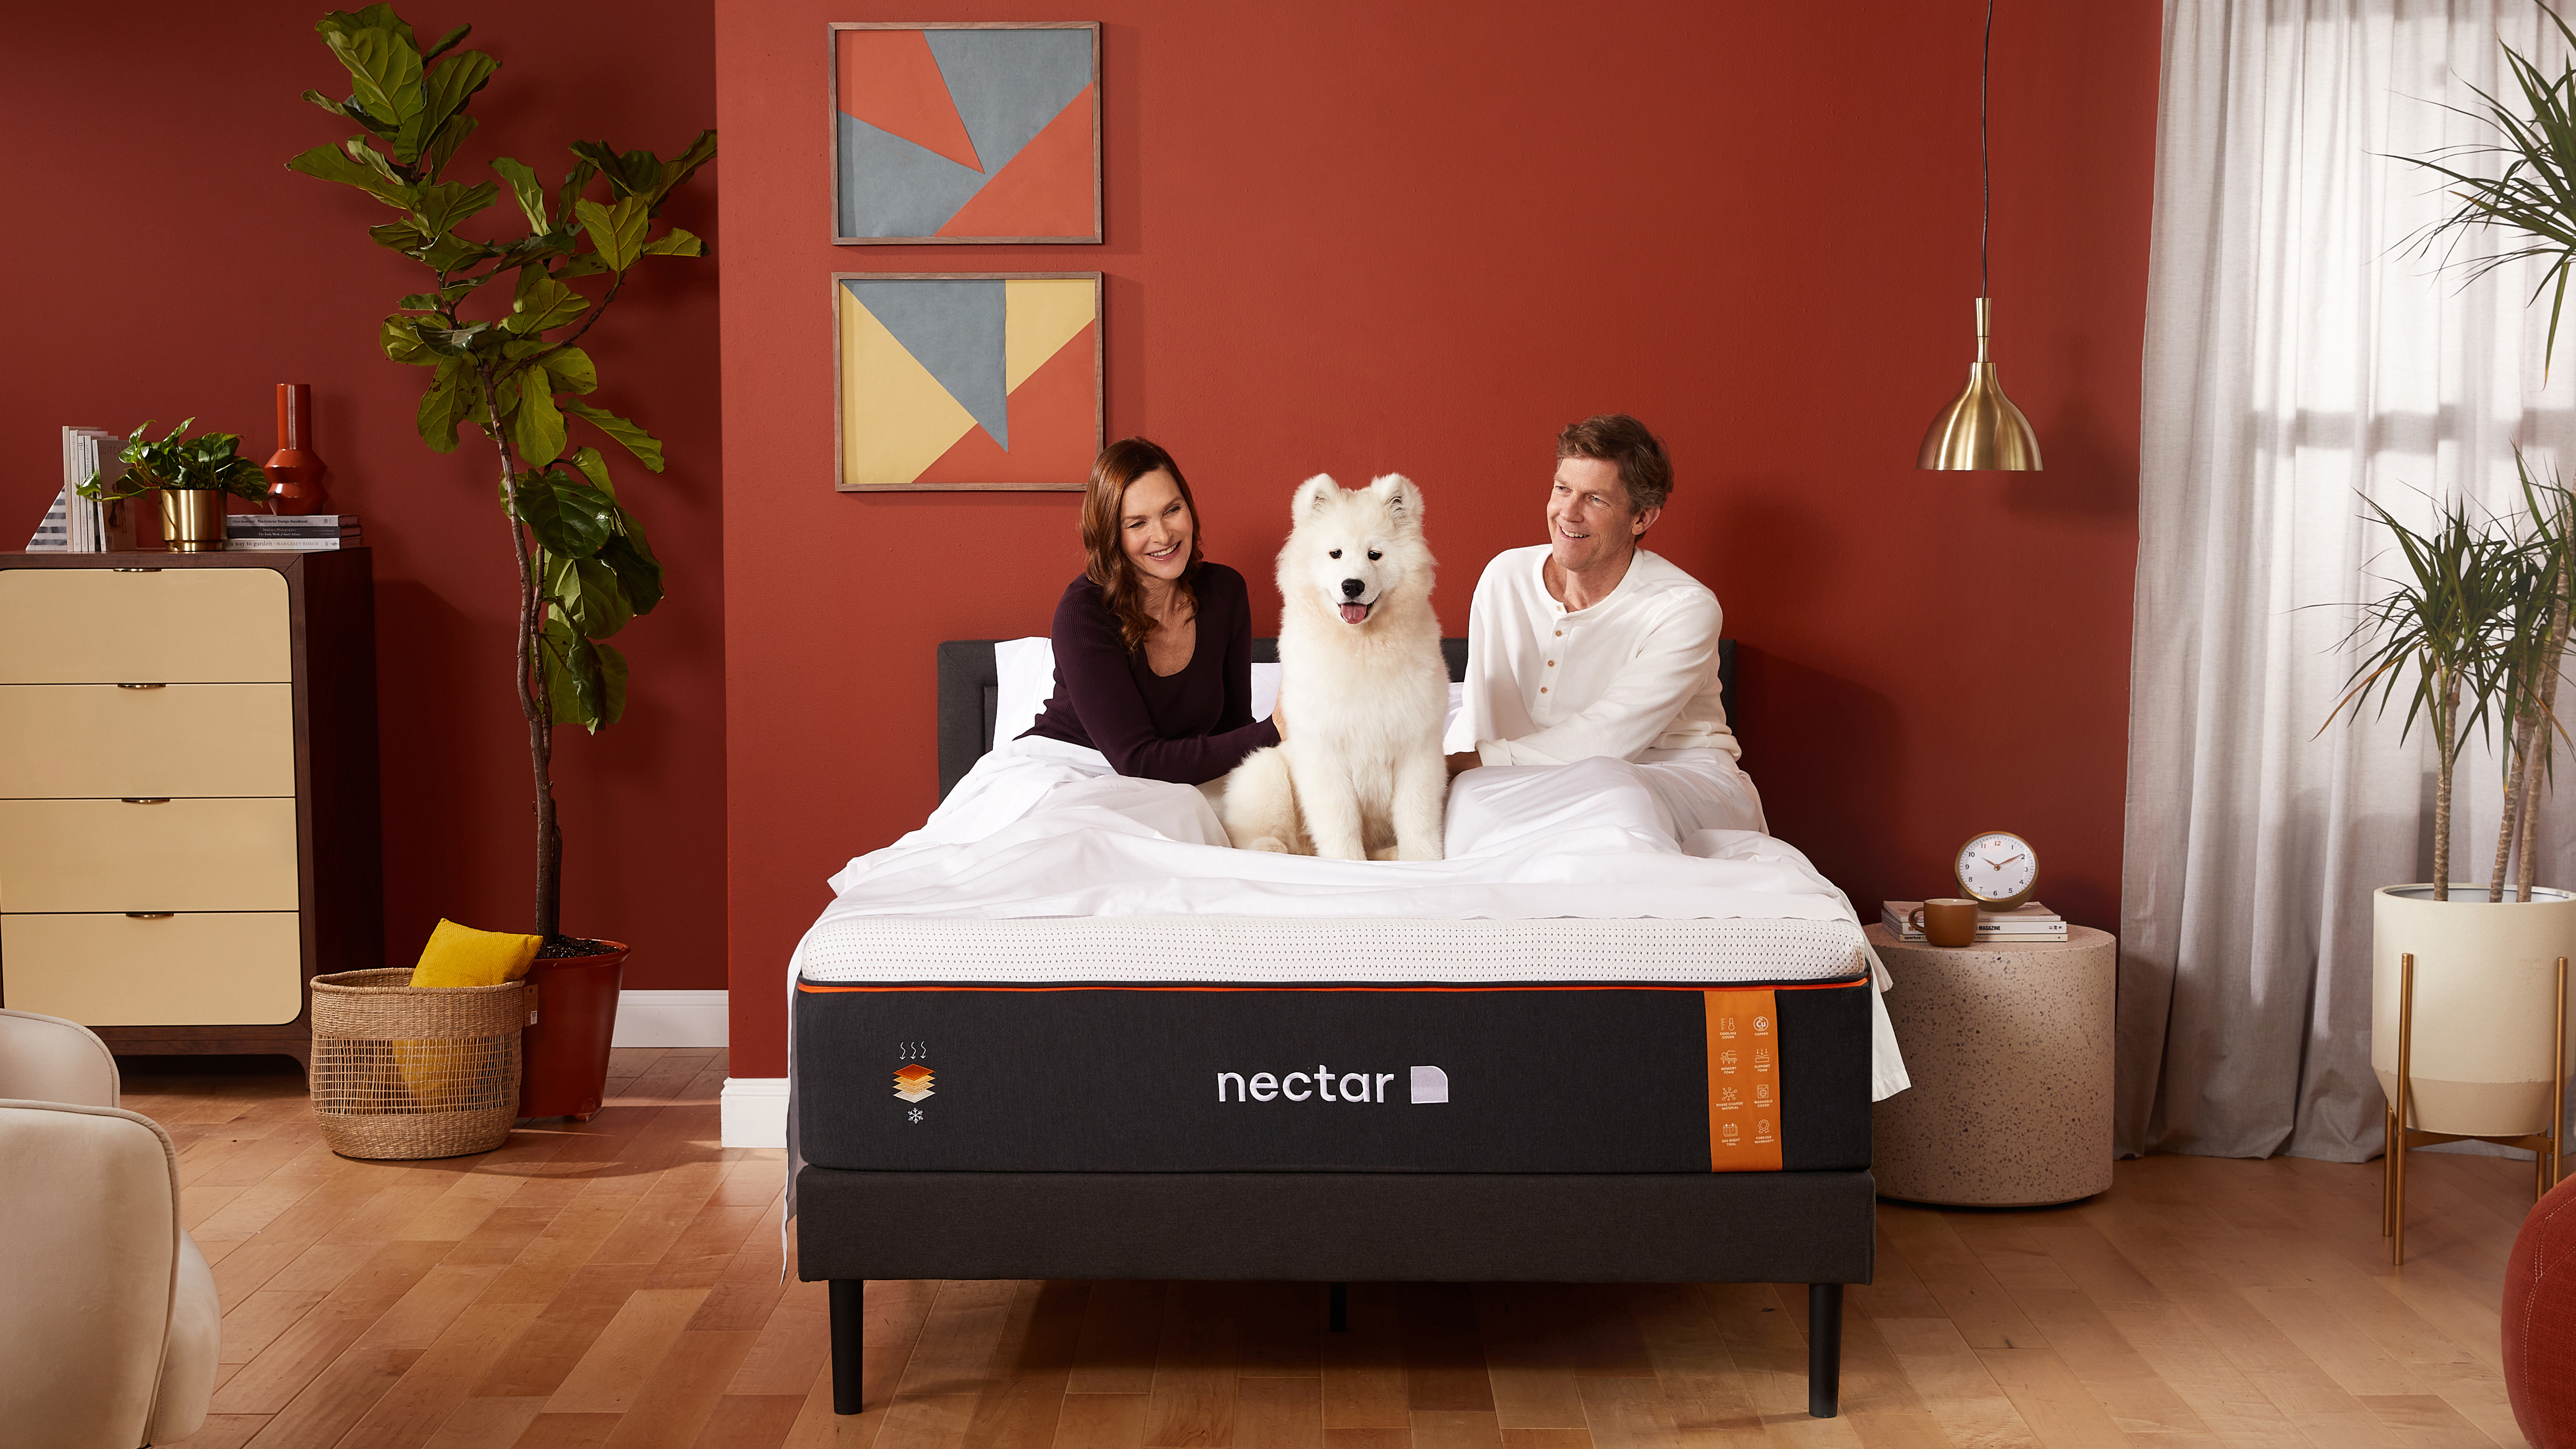 Resimde, markanın en iyi serinletici yatağı olan Nectar Premier Copper Yatak üzerinde oturan genç bir çift ve köpekleri gösterilmektedir.